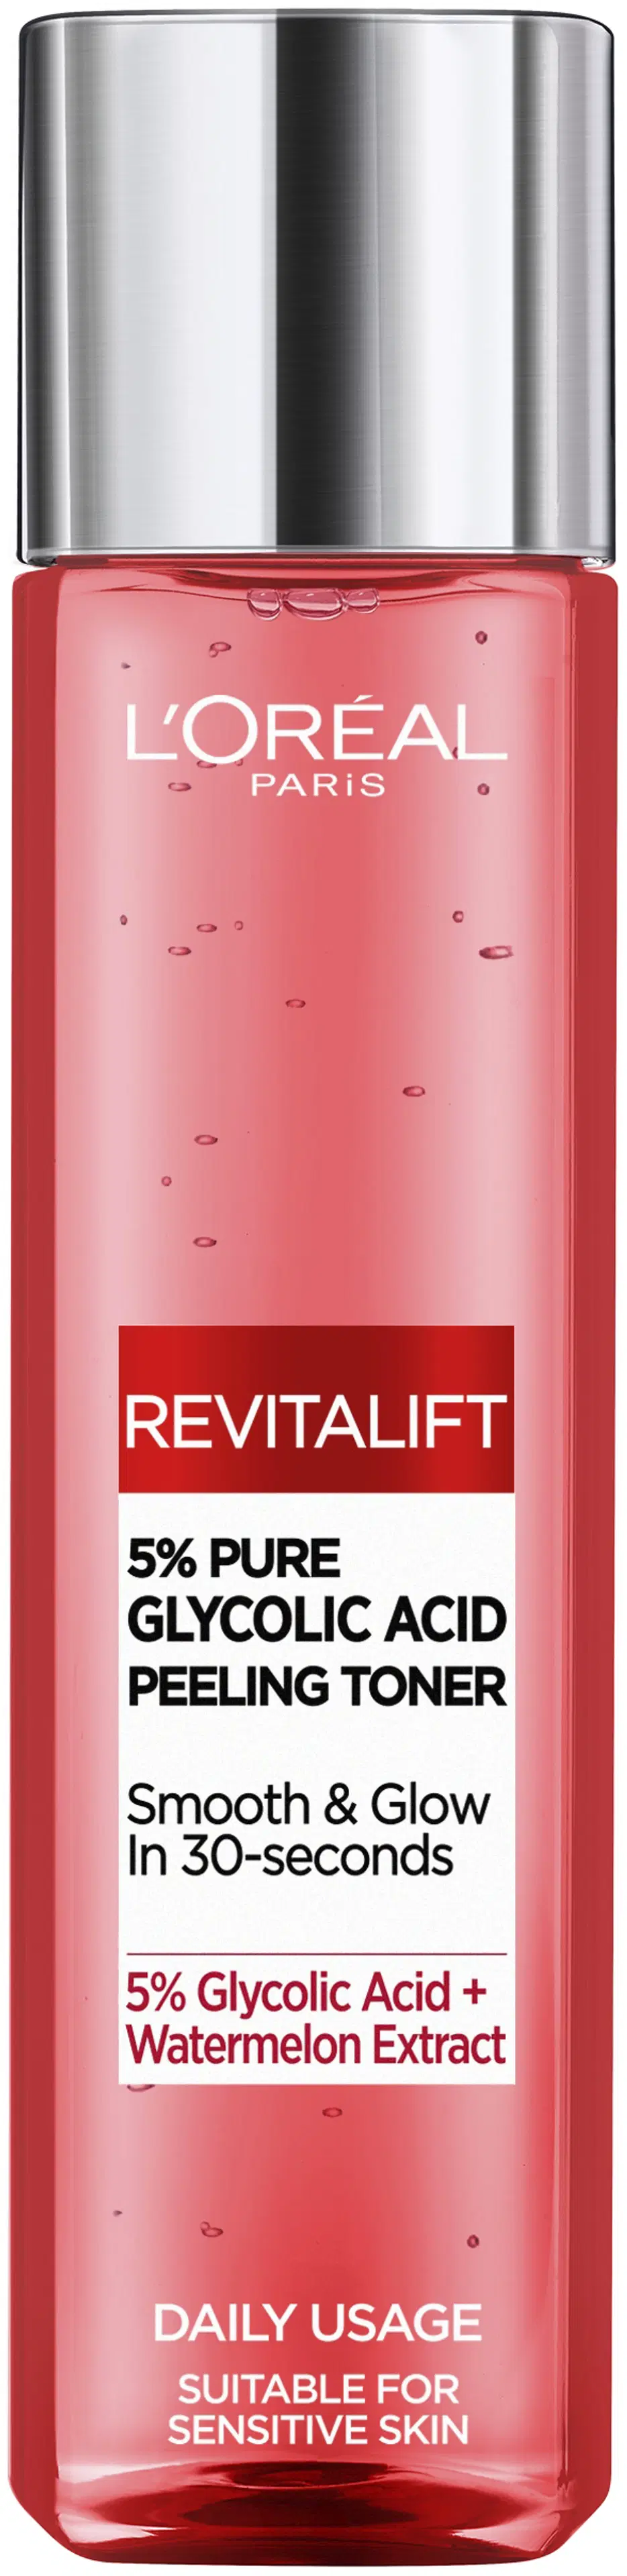 L'Oréal Paris Revitalift 5% Glycolic Acid Peeling Toner kuoriva kasvovesi 180 ml